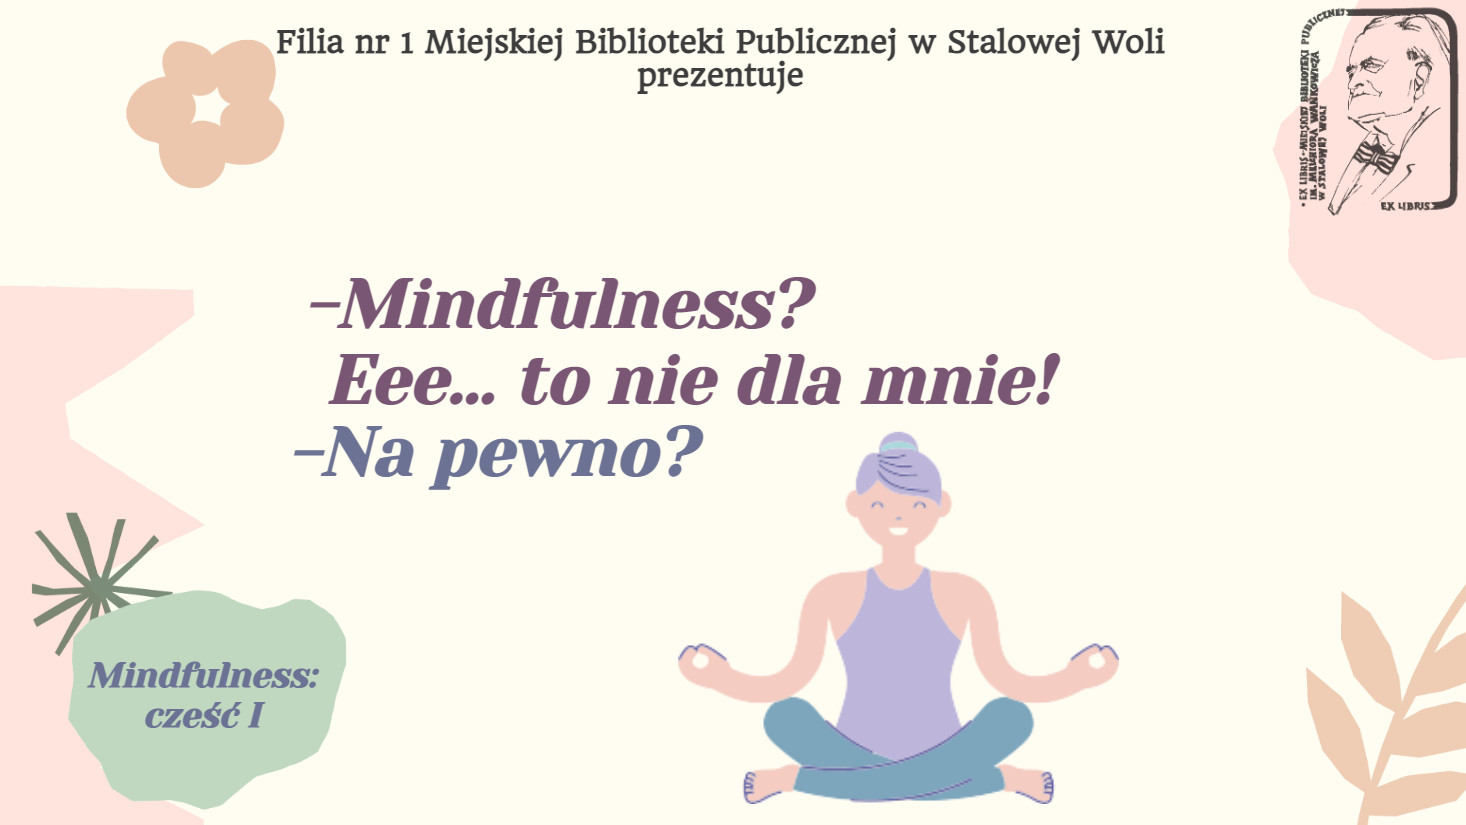 Mindfulness? Eee…, to nie dla mnie!